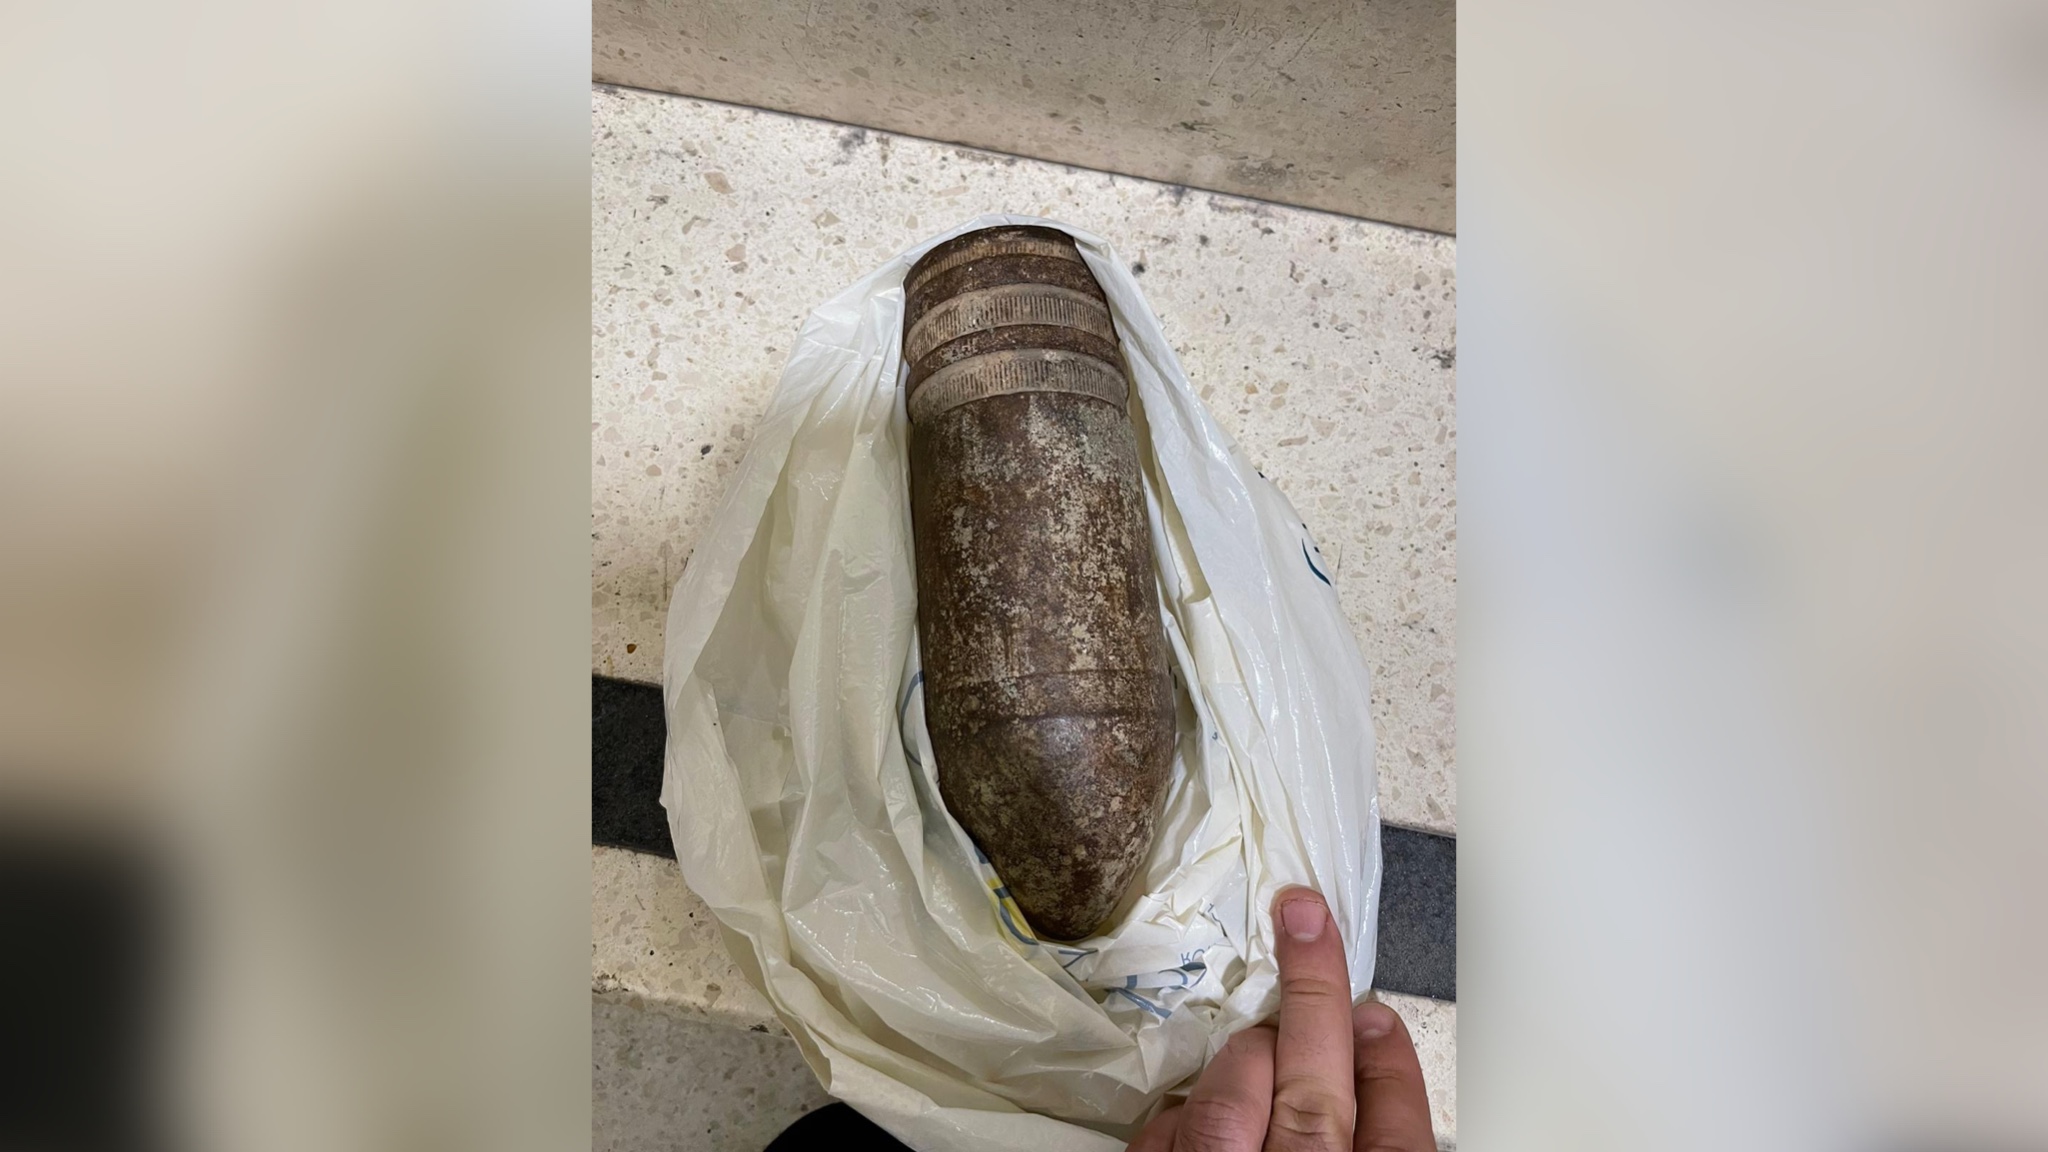 Неразорвавшийся снаряд, который хотела провезти американская семья в Израиле. Фото © Twitter / JudahAriGross 